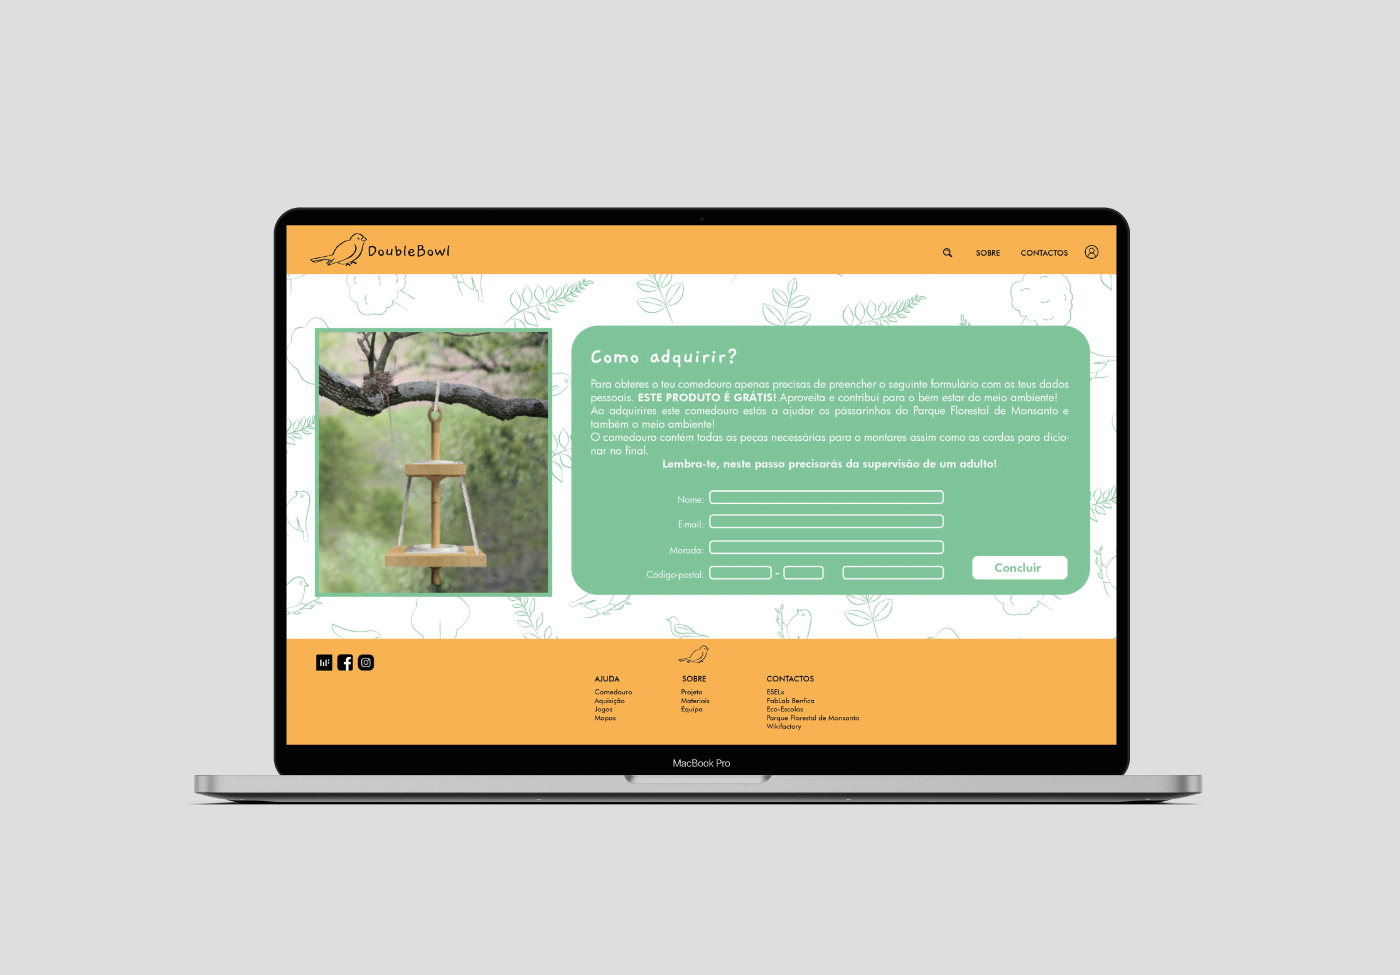 app design design Figma Games kids Layout UI/UX Webdesign Website